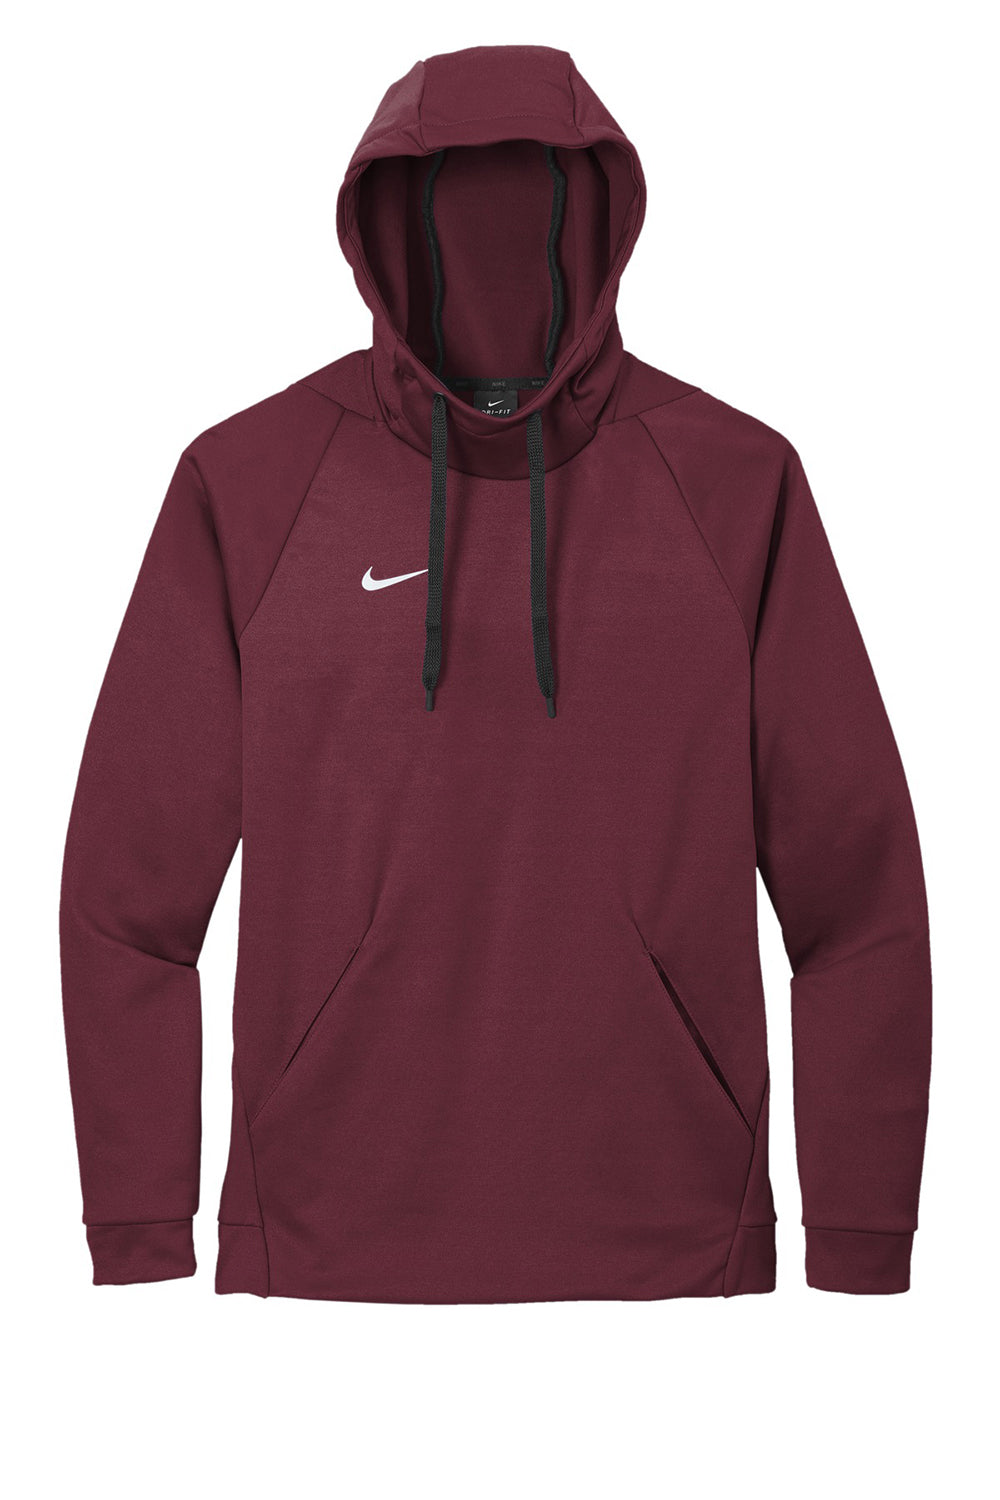 Nike CN9473 Mens Therma-Fit Moisture Wicking Fleece Hooded Sweatshirt Hoodie Team Dark Maroon Flat Front